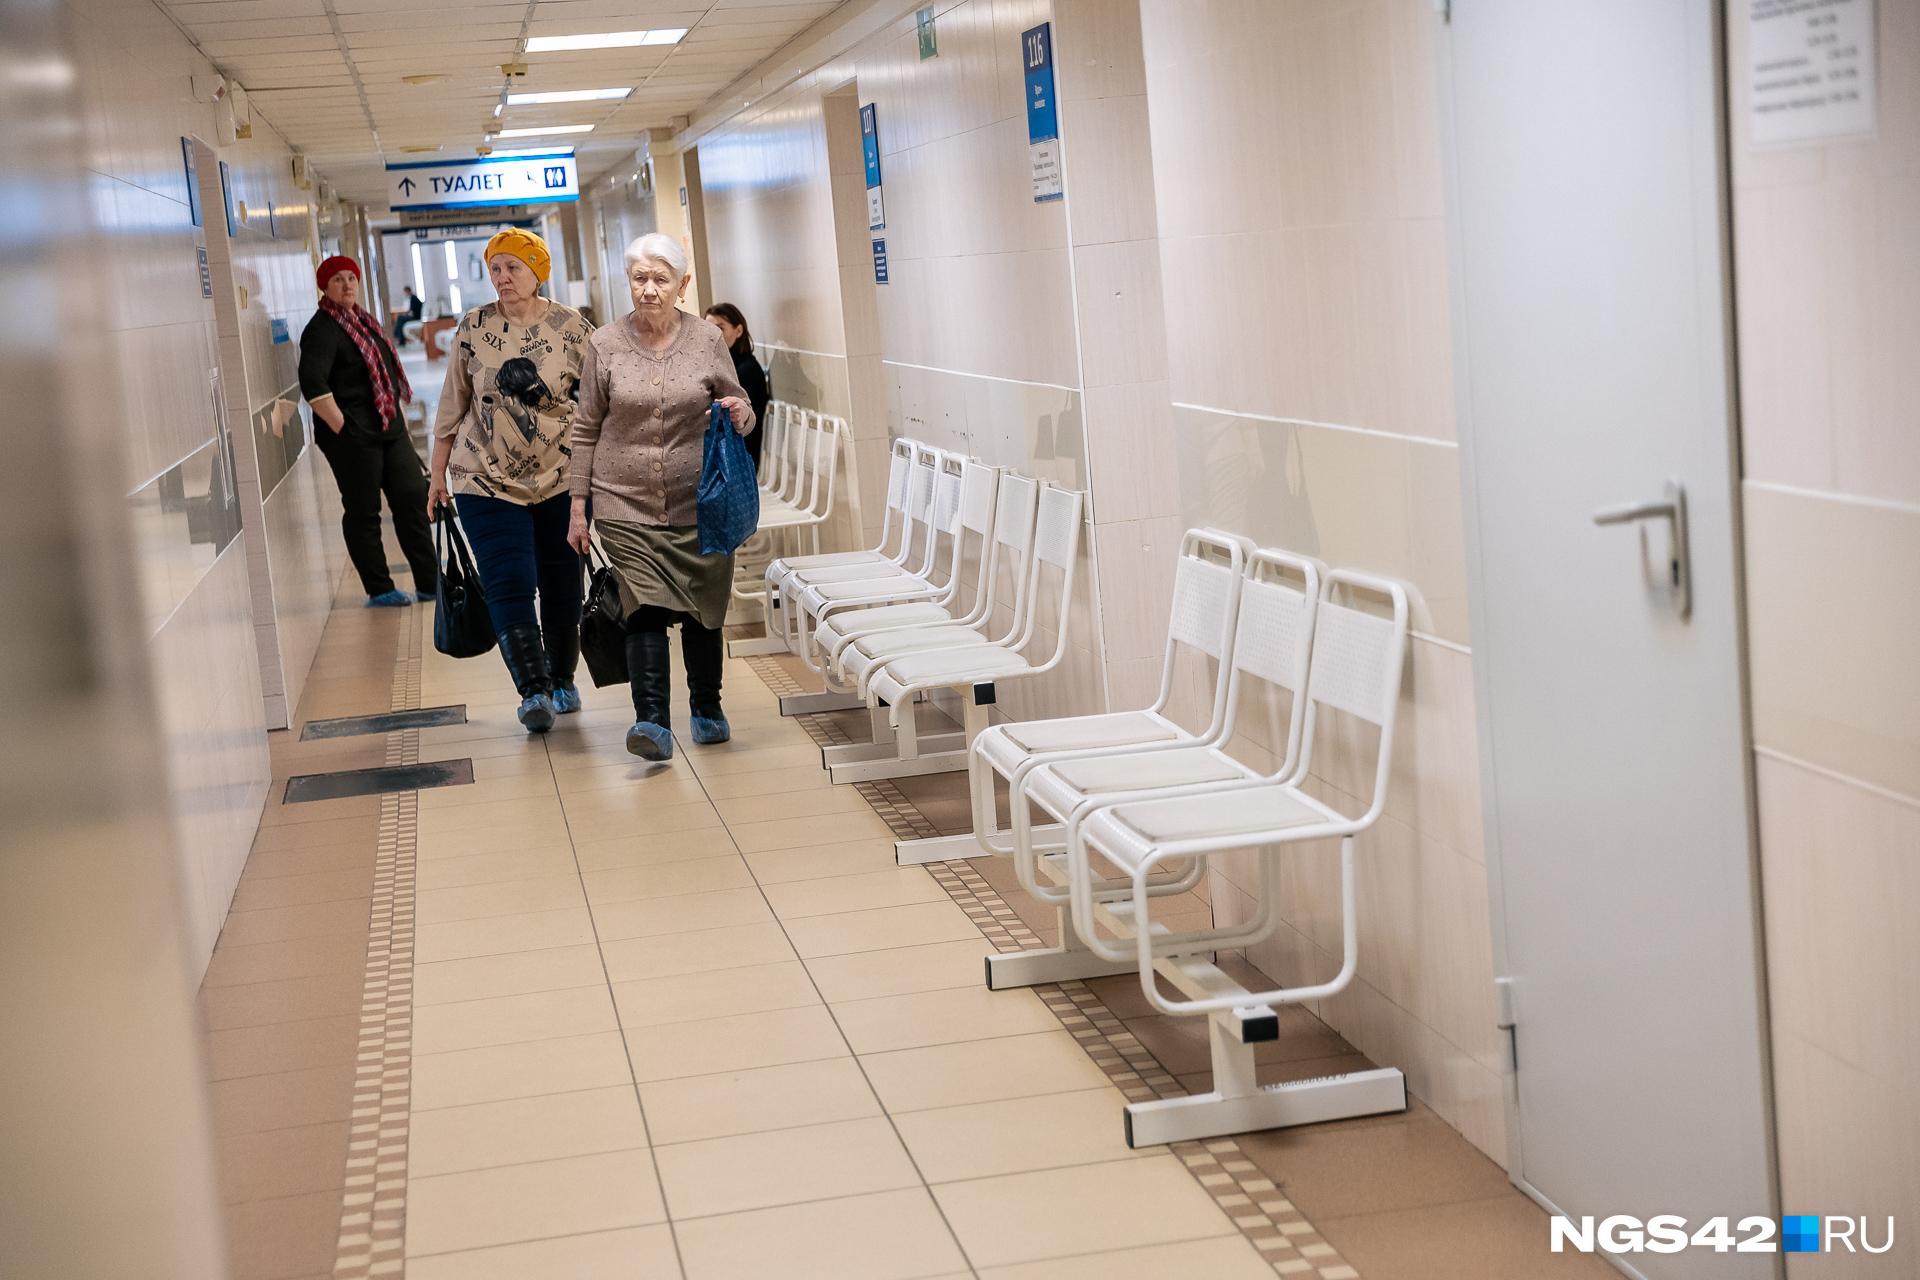 Пациенты Карымской районной больницы в Забайкалье остались без отопления